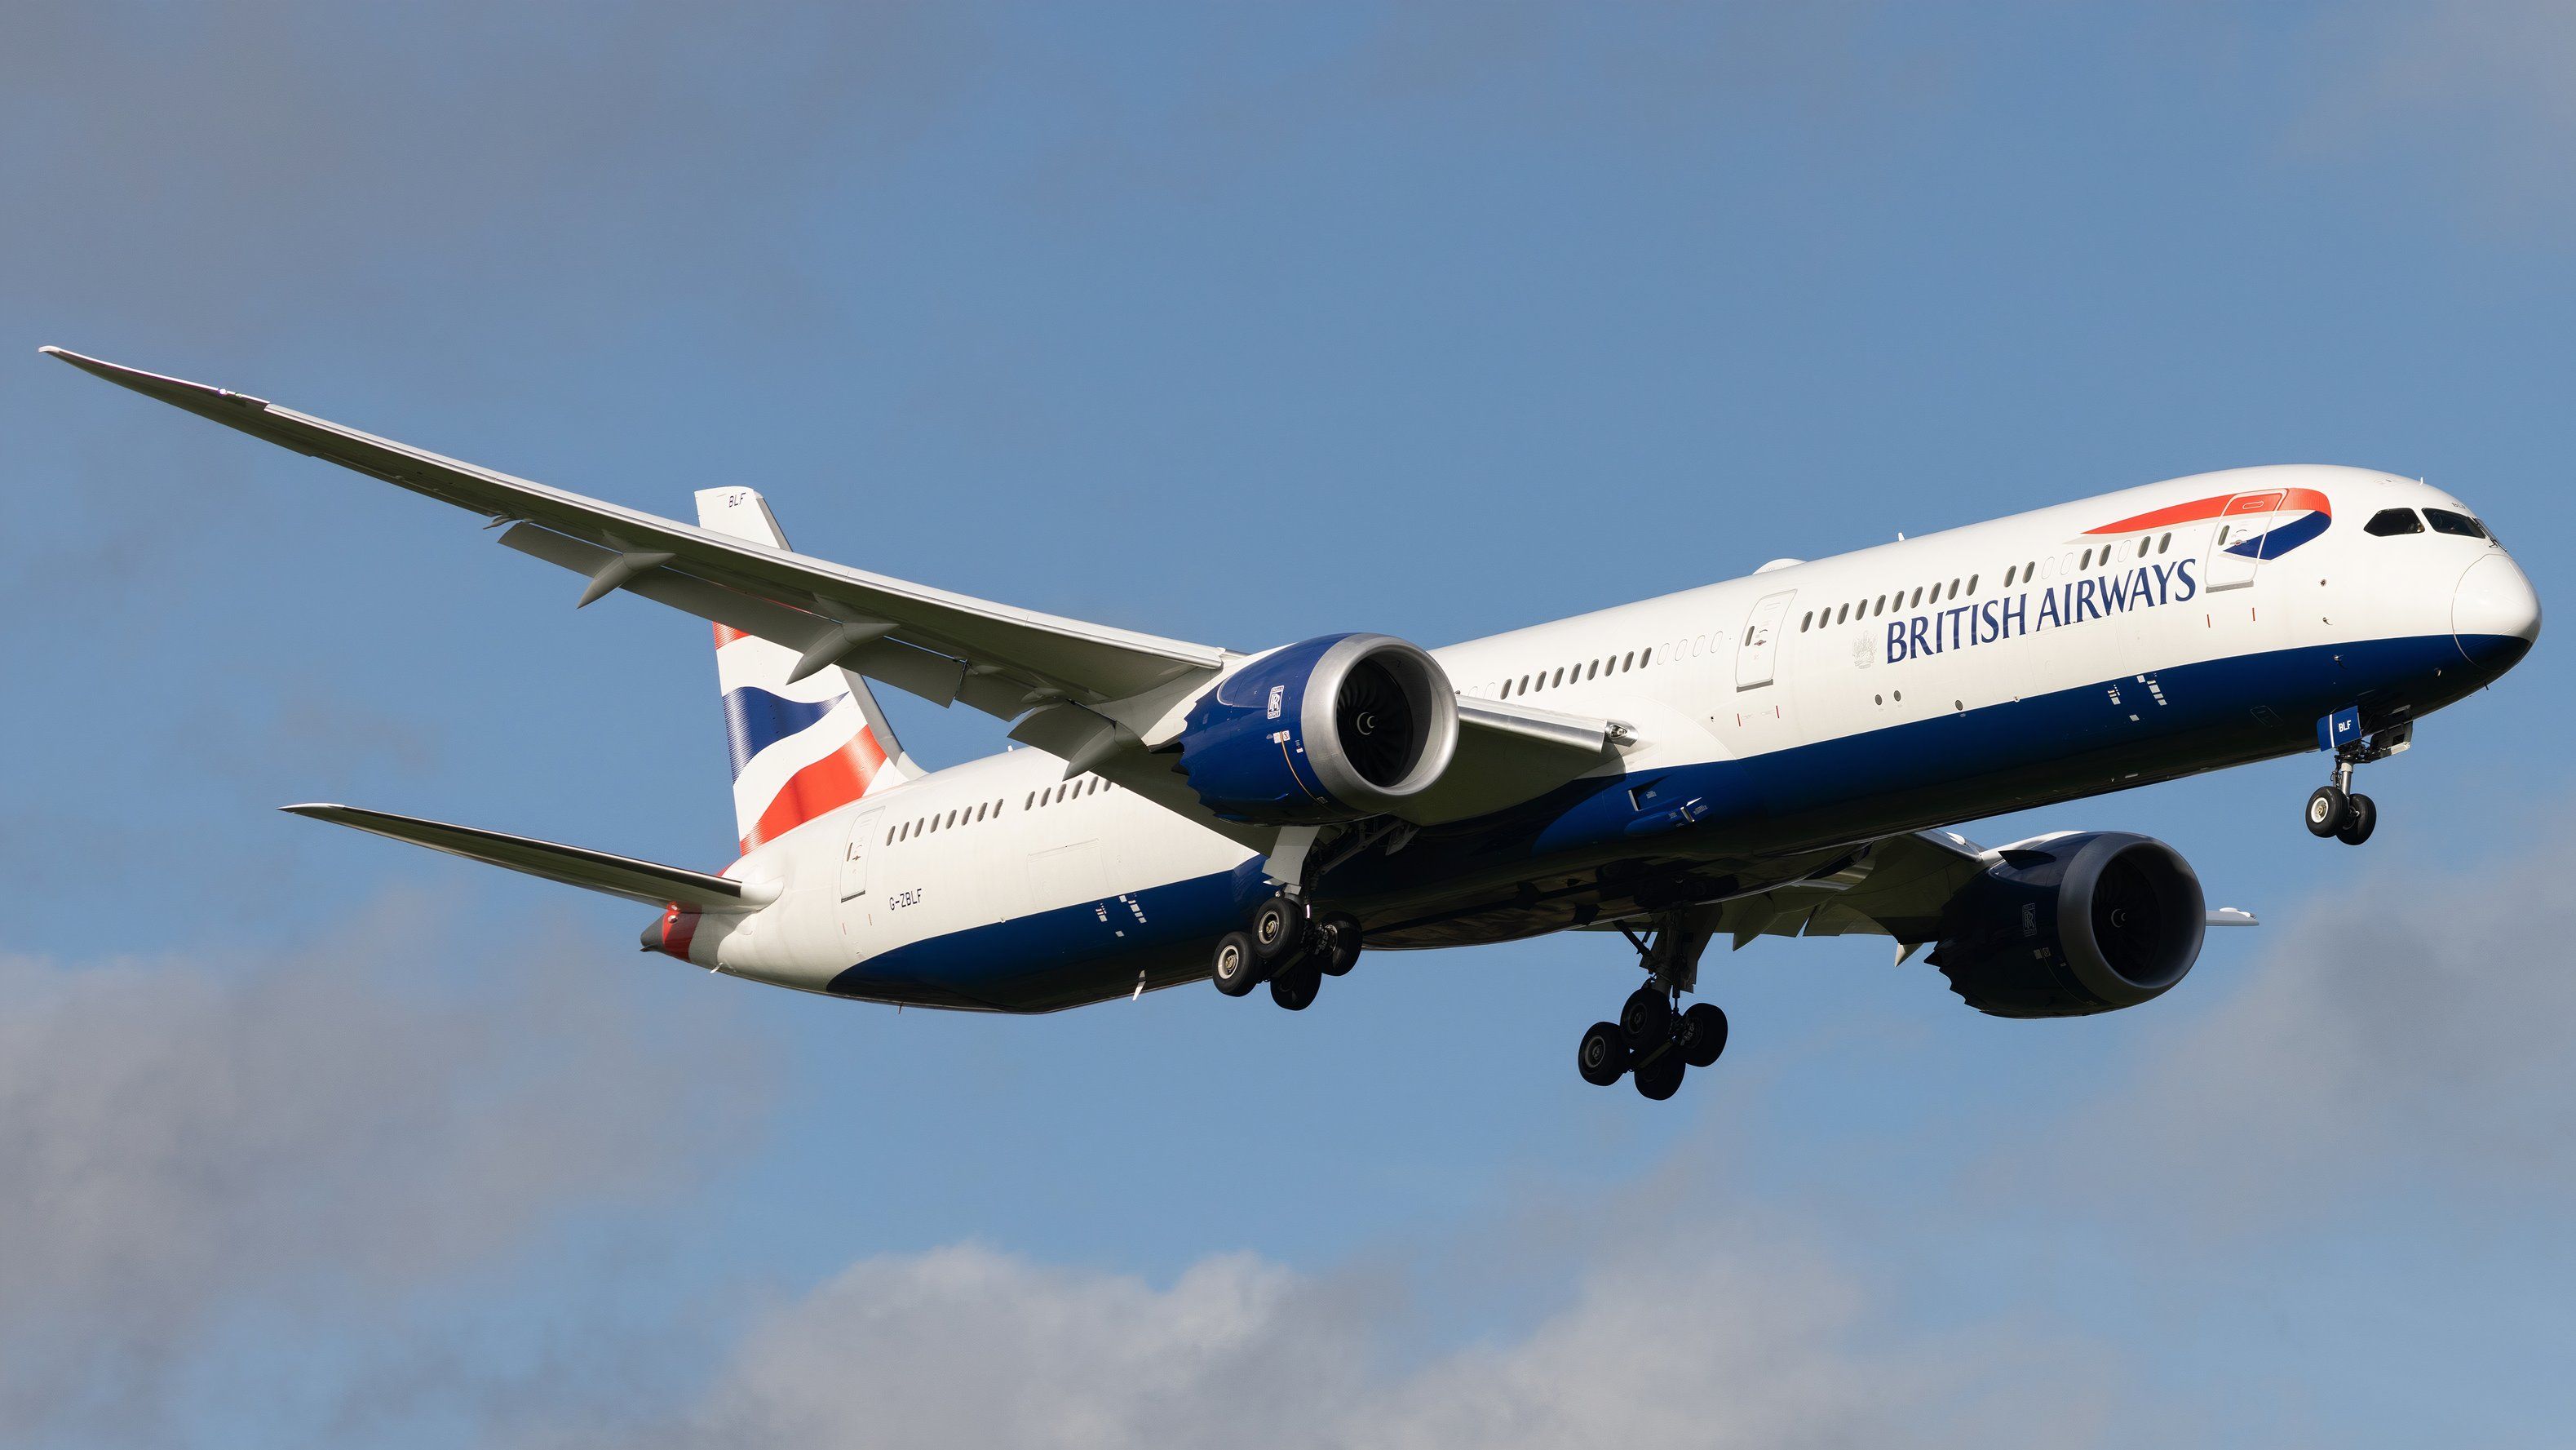 British Airways Boeing 787 landing at London Heathrow Airport (LHR) shutterstock_2368783705